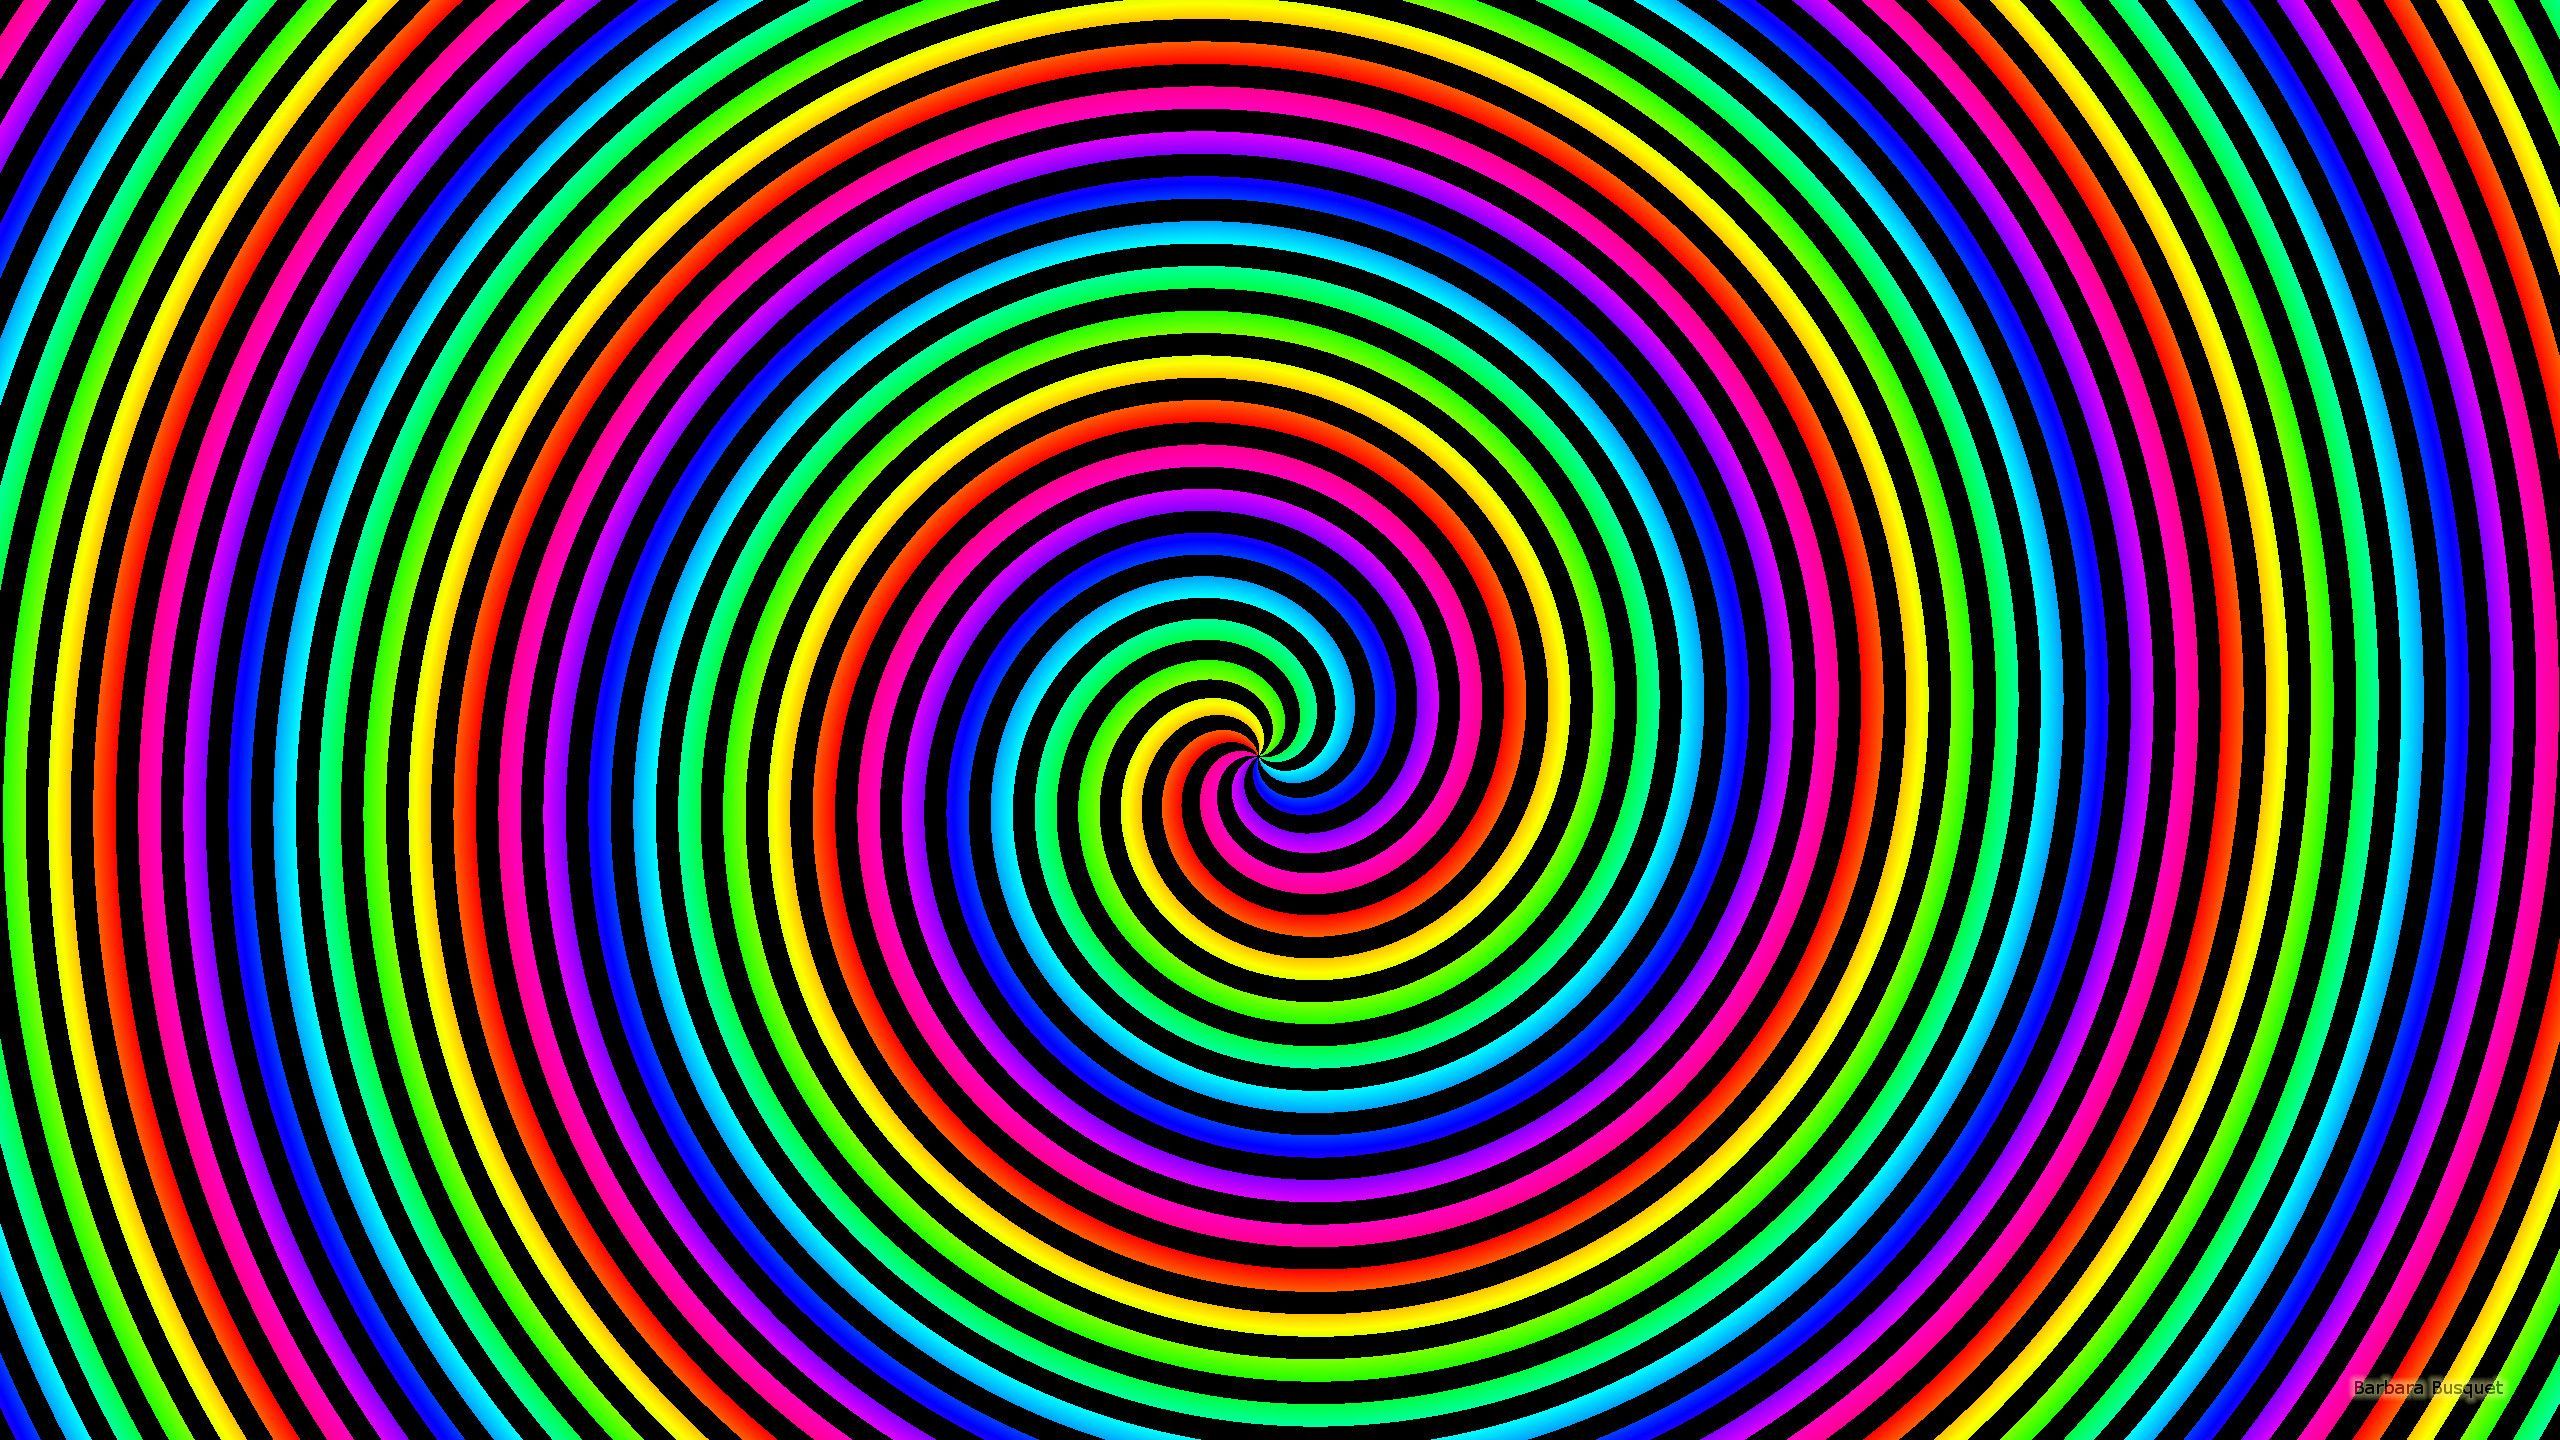 Spiral Wallpaper Free Spiral Background